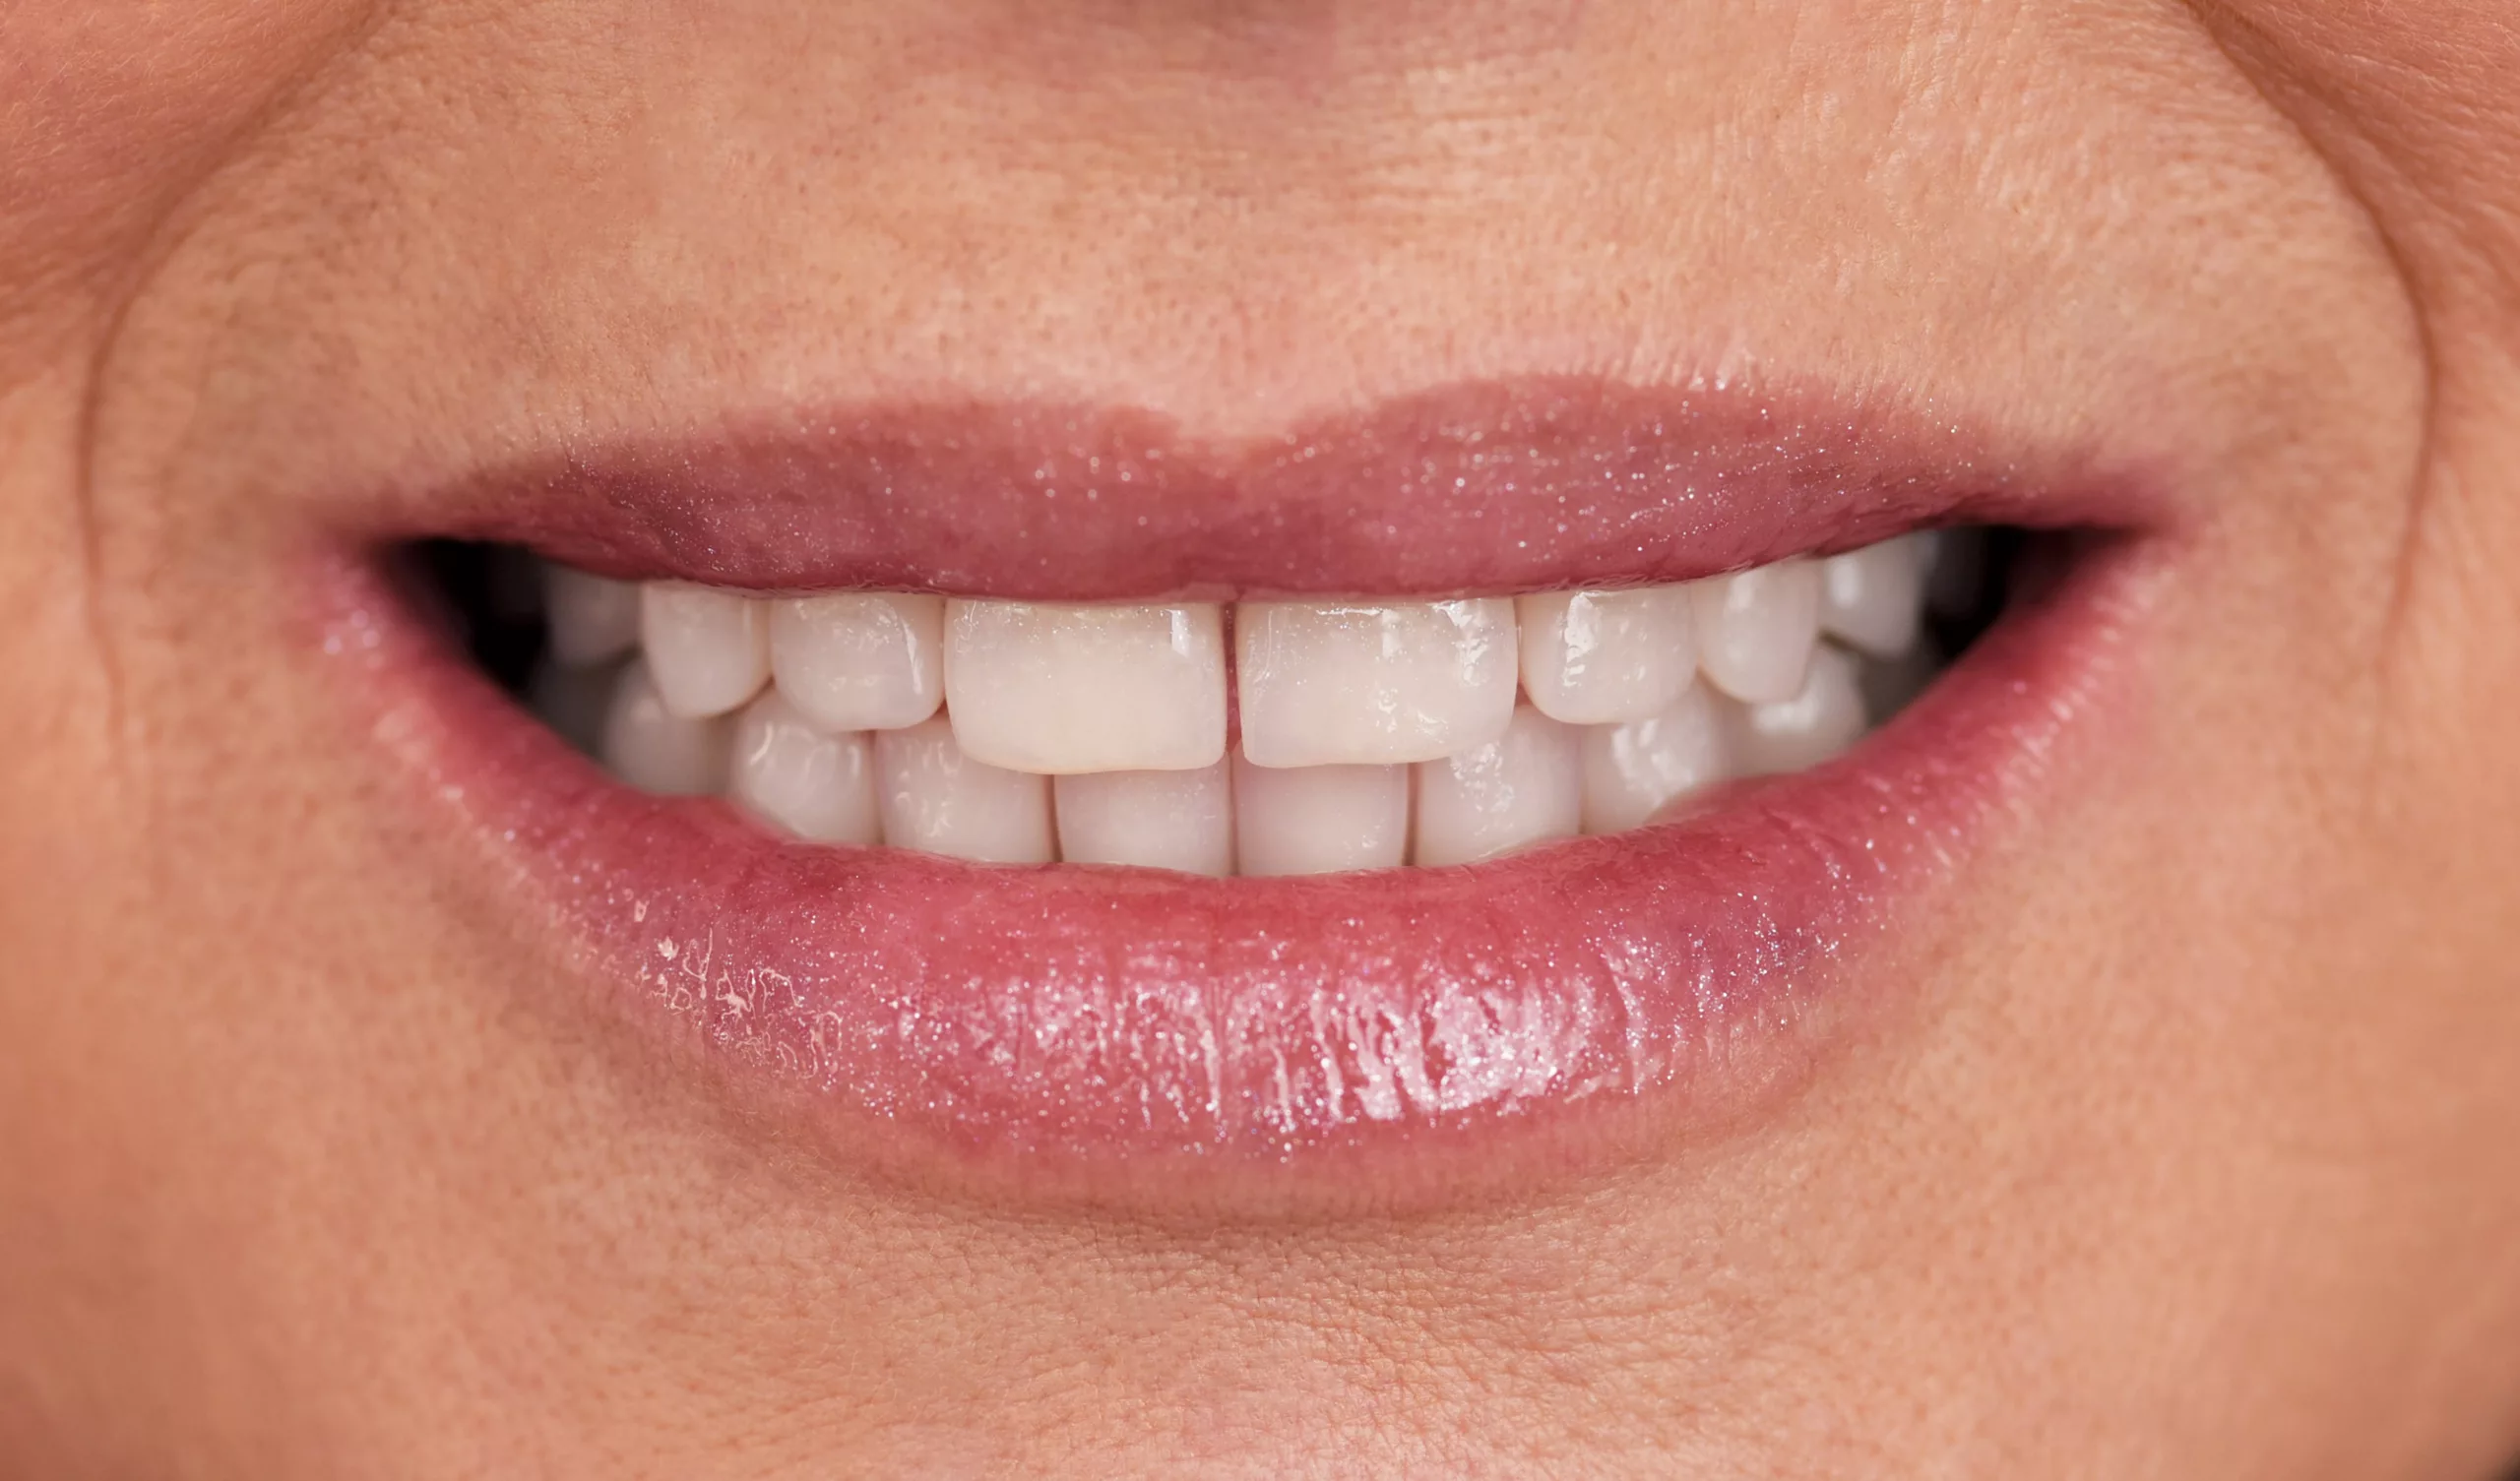 Impianti dentali: la giusta soluzione per riavere un nuovo sorriso?